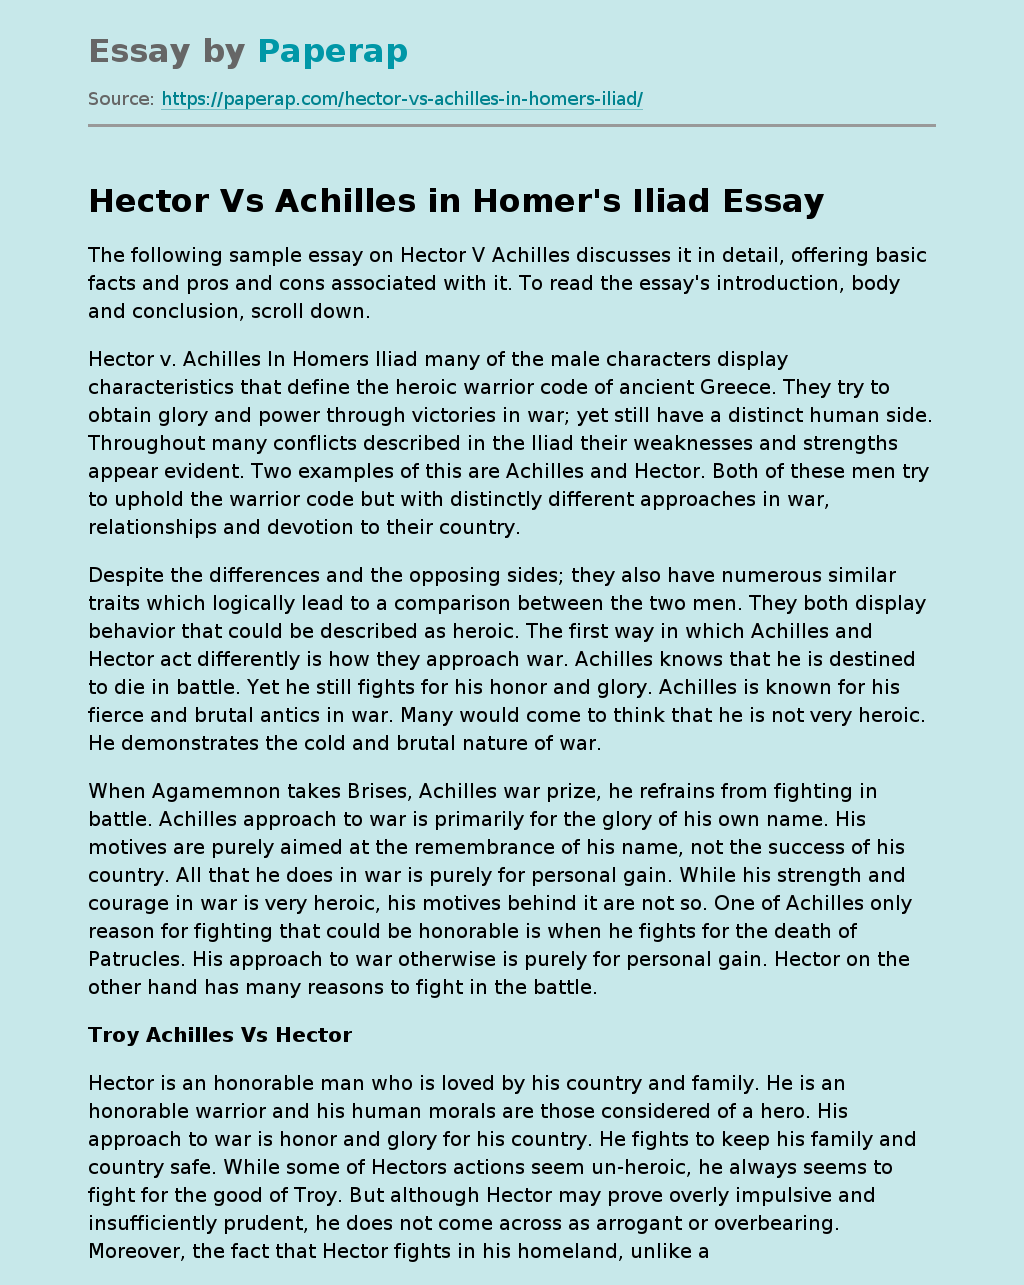 Hector Vs Achilles in Homer's Iliad